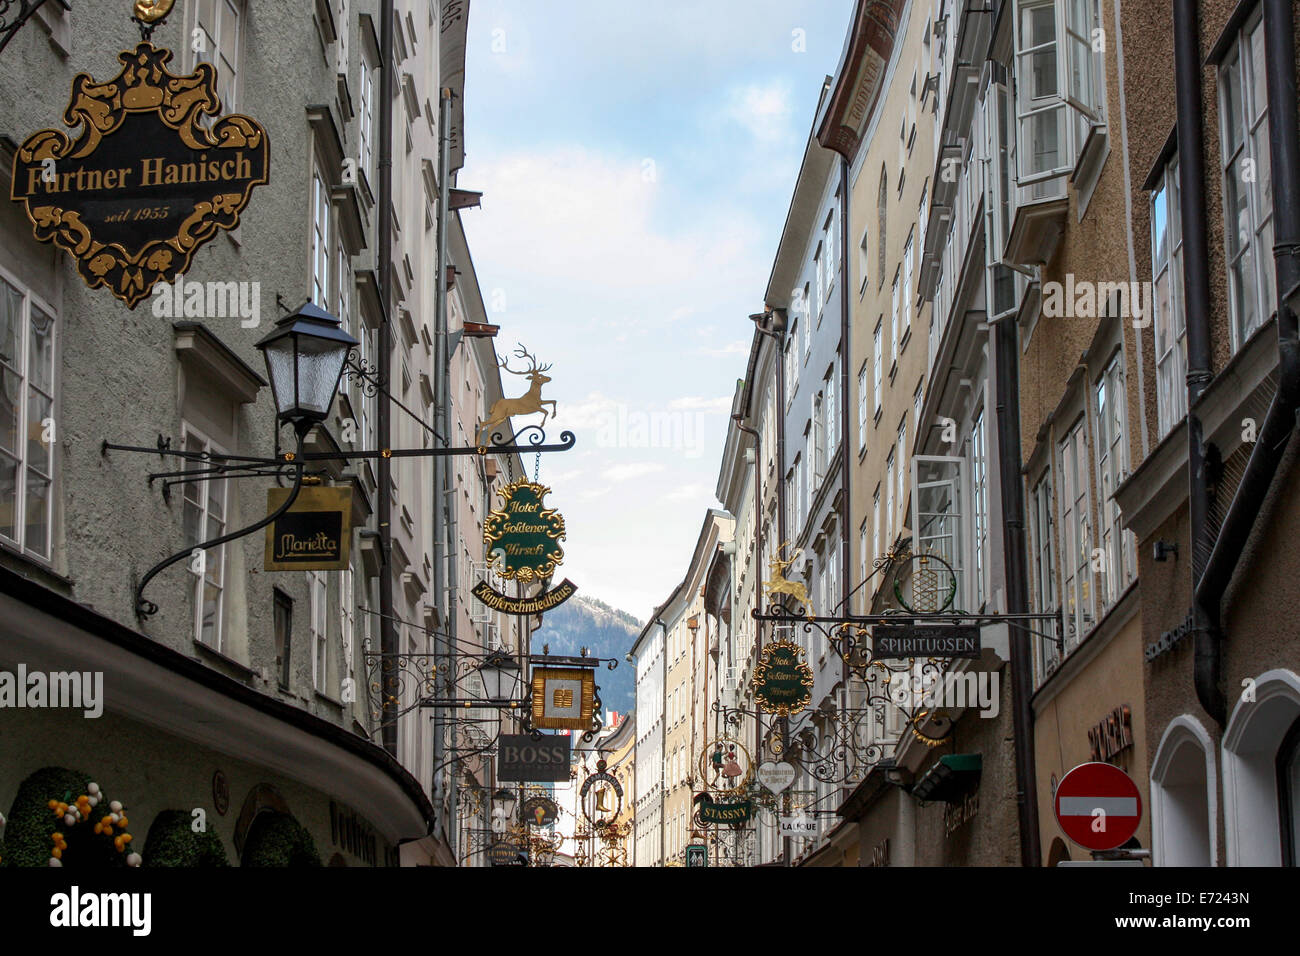 Austria: la Getreidegasse, una delle più antiche strade del centro di Salisburgo. Foto dal 16 maggio 2009. Foto Stock